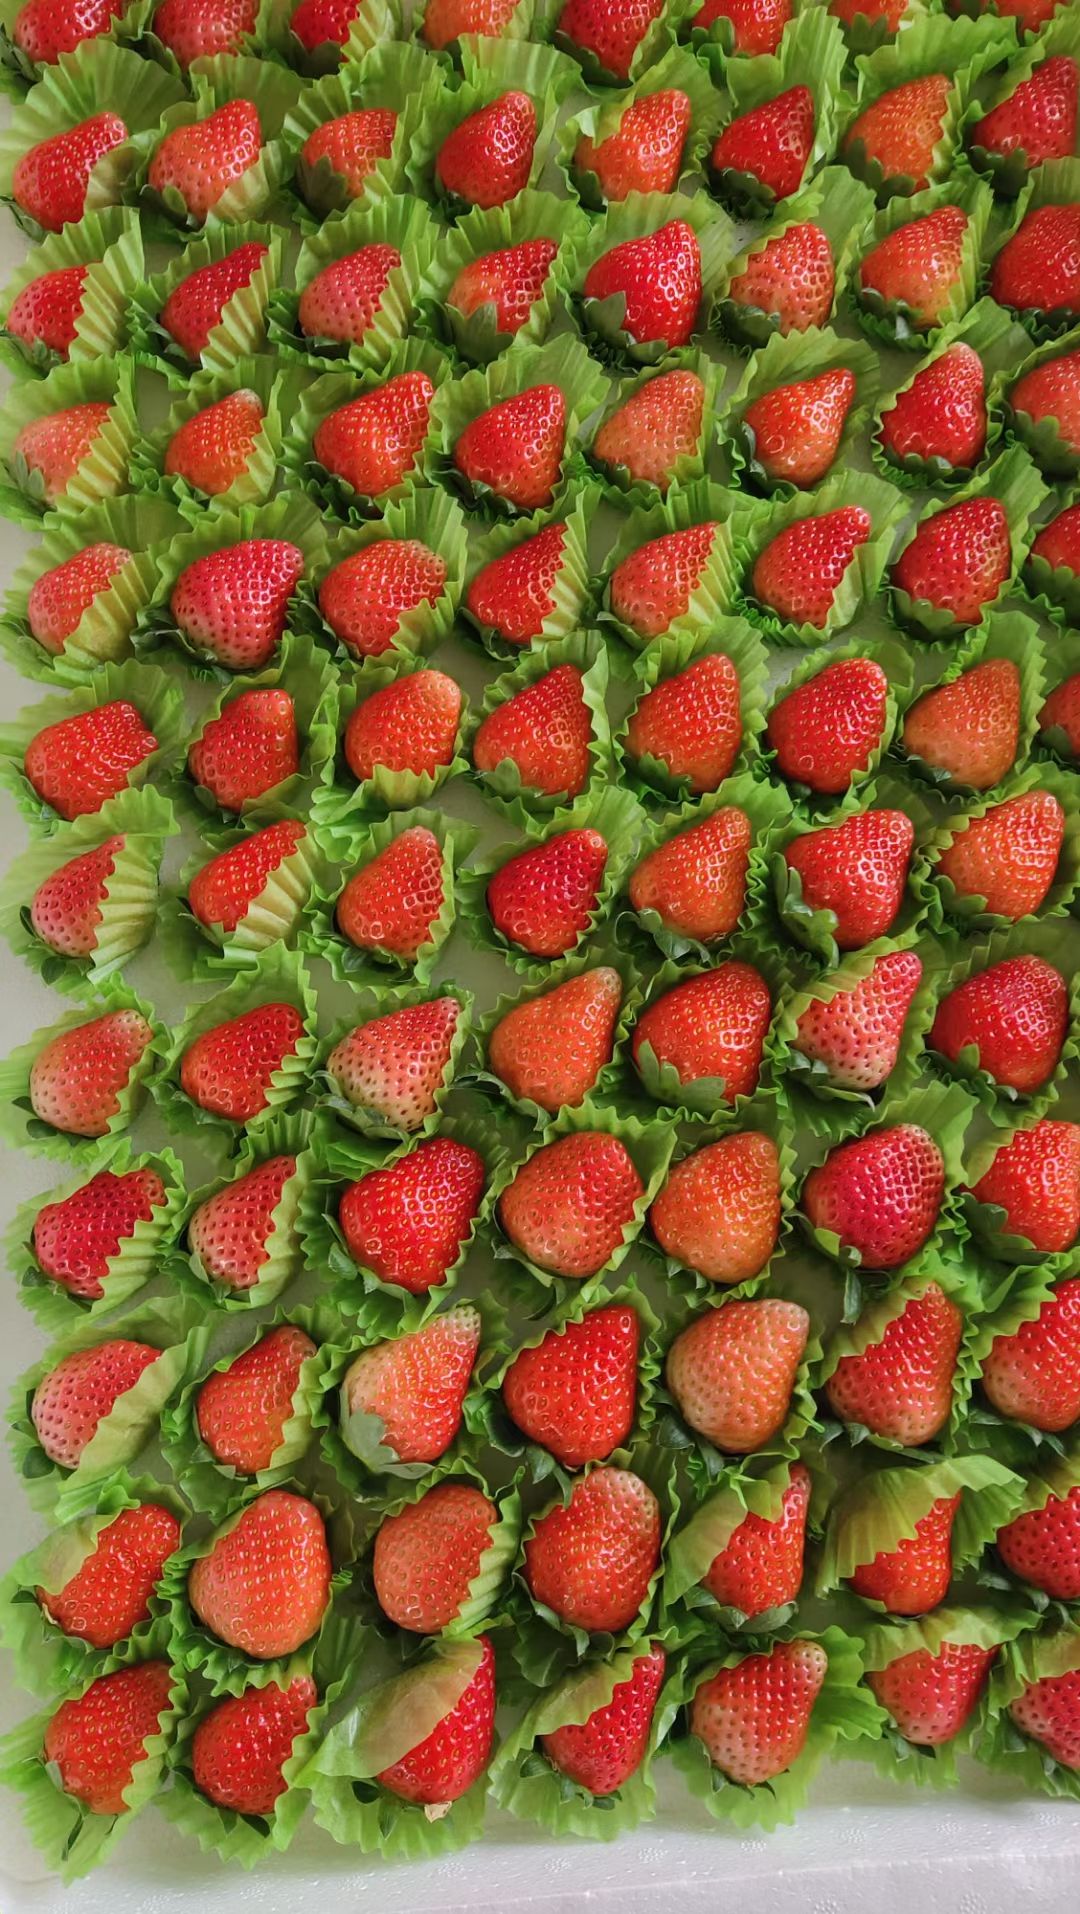 阜阳天仙醉草莓 新鲜奶油草莓 果园现摘 安徽阜阳草莓新鲜草莓当天